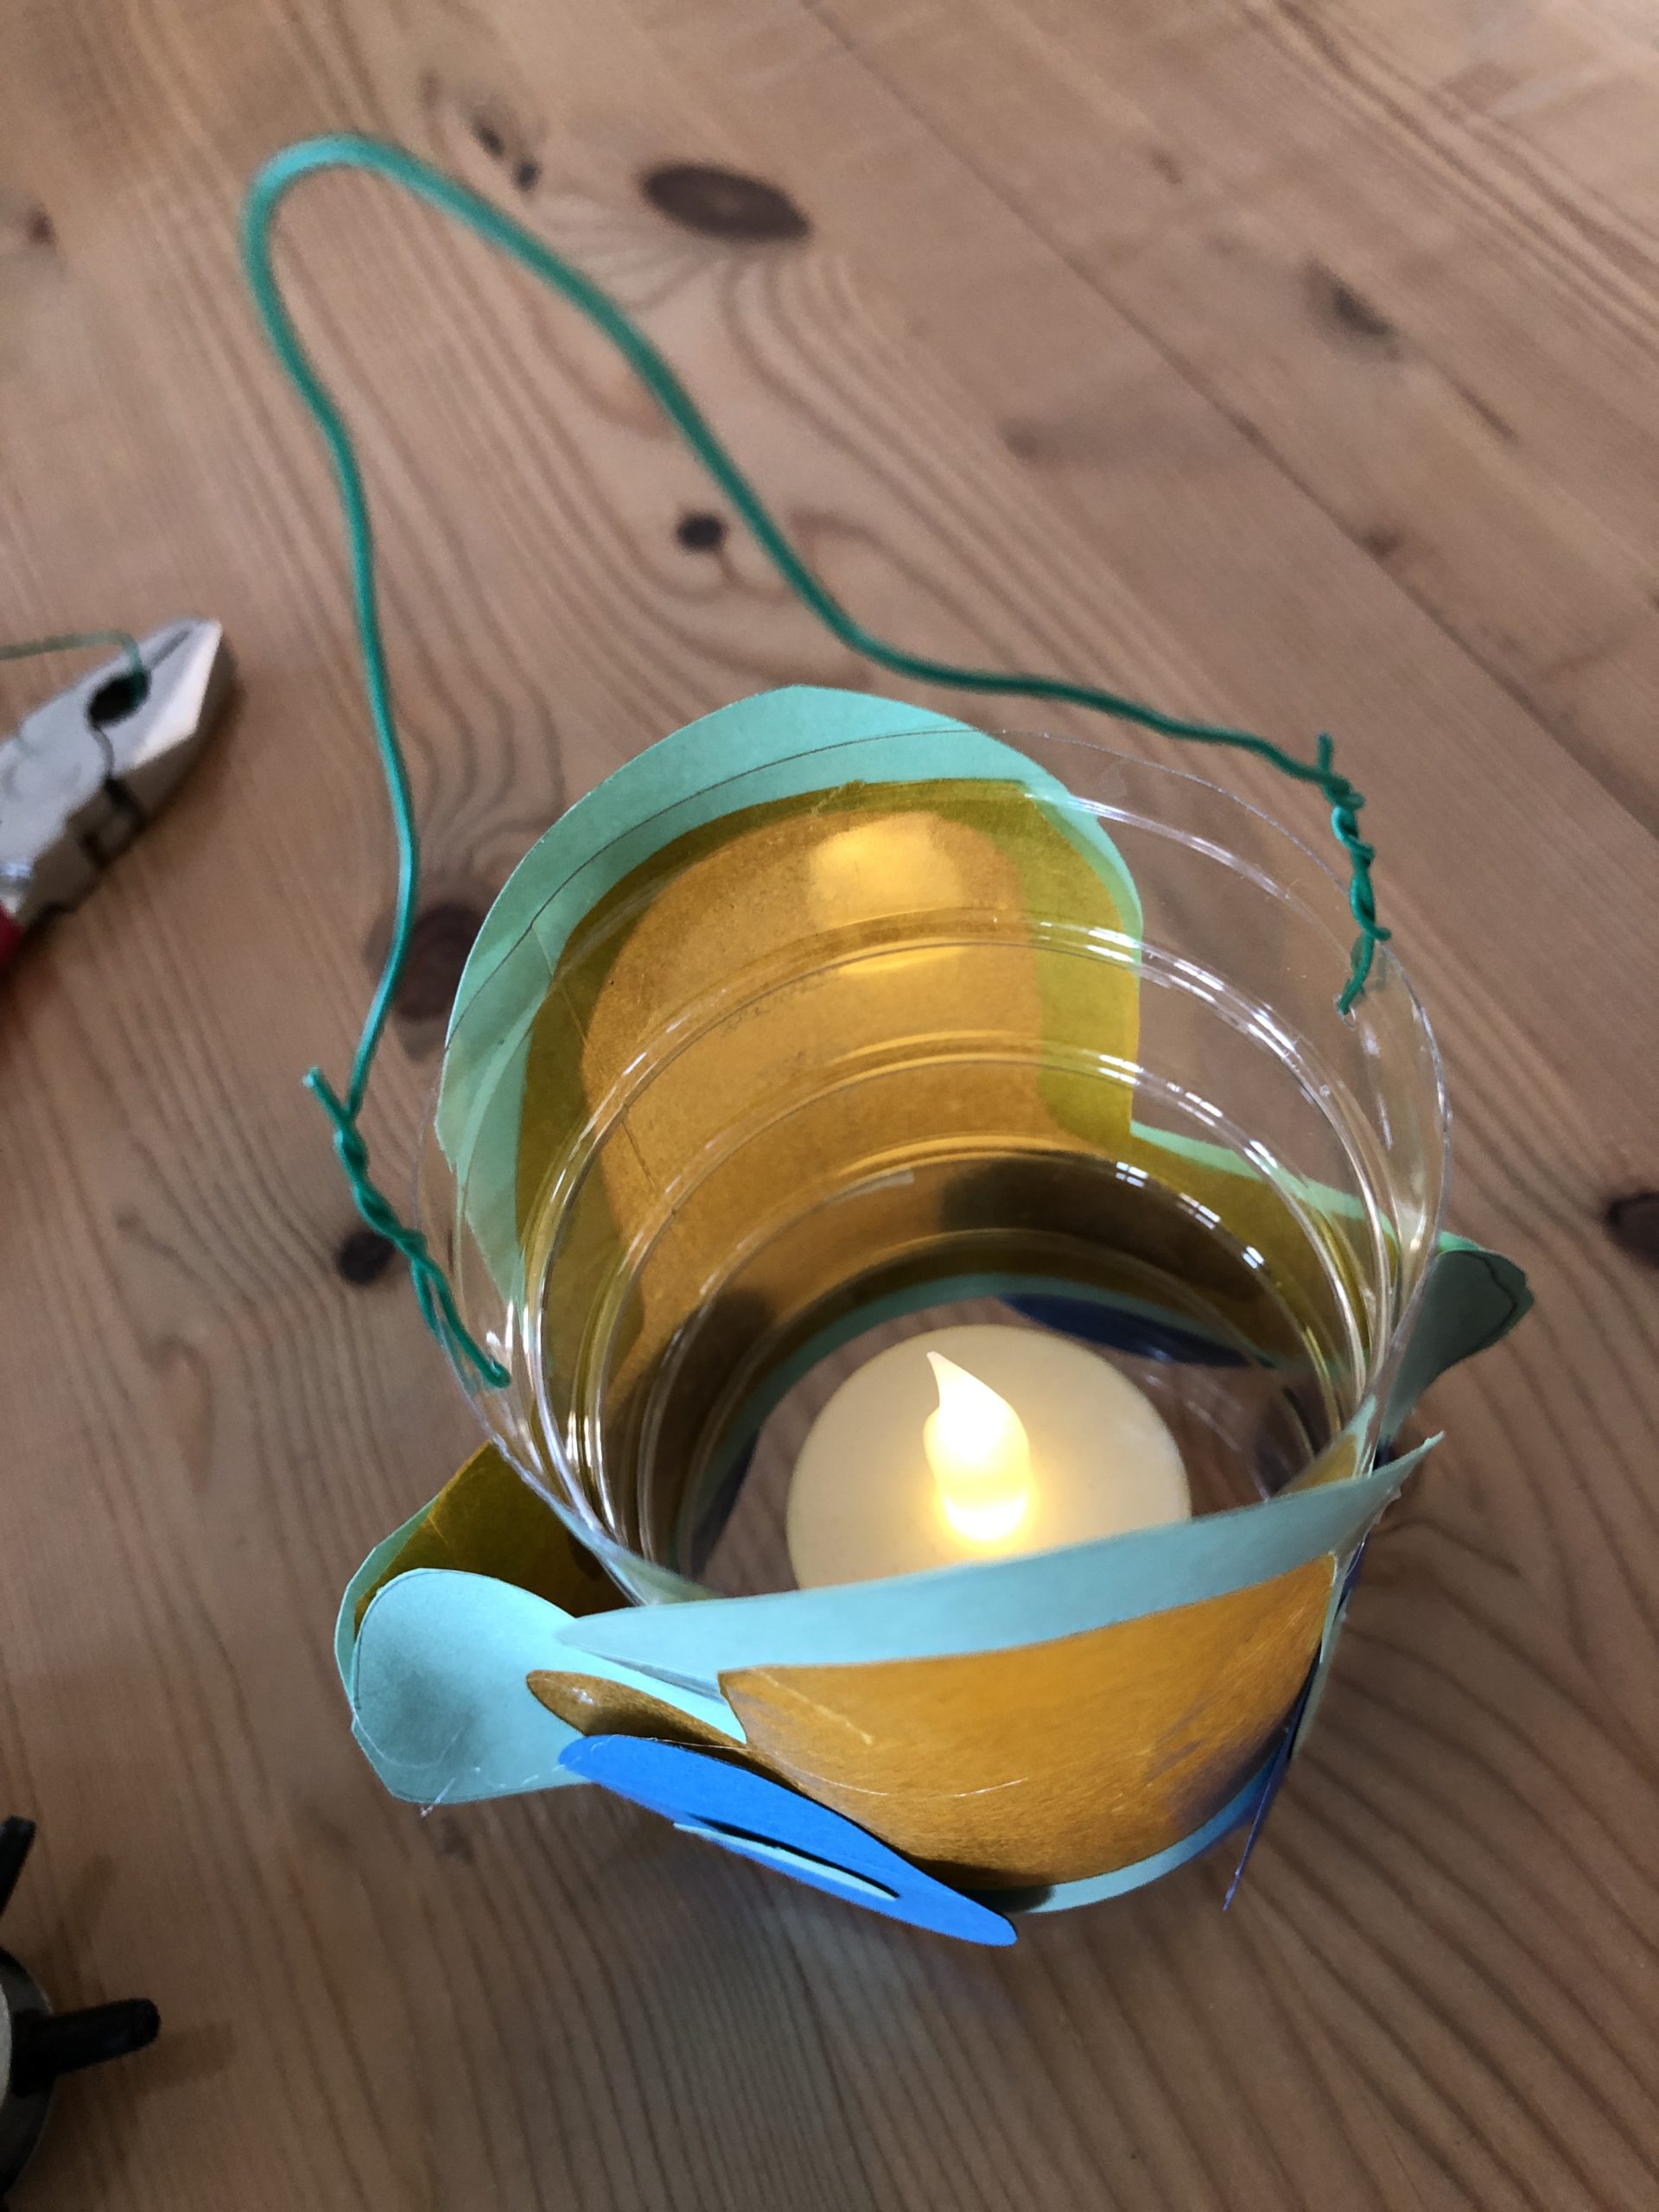 Bild zum Schritt 23 für das Bastel- und DIY-Abenteuer für Kinder: 'Ein elektrisches Teelicht oder eine Mini-Lichterkette eignen sich als Lichtquelle.'